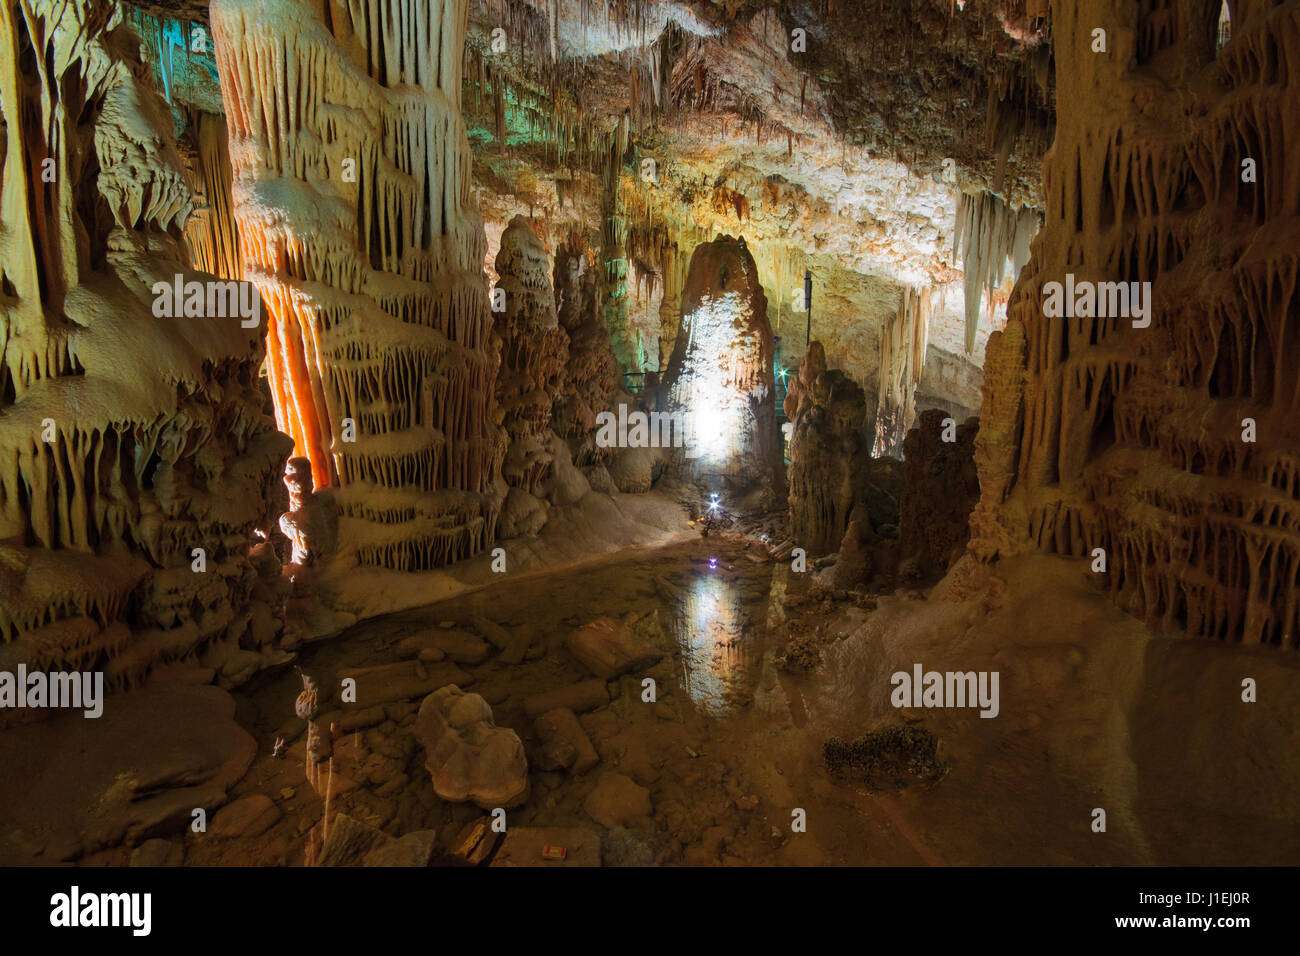 Stalactites and stalagmites in Avshalom Stalactites Cave, Soreq, Israel Stock Photo